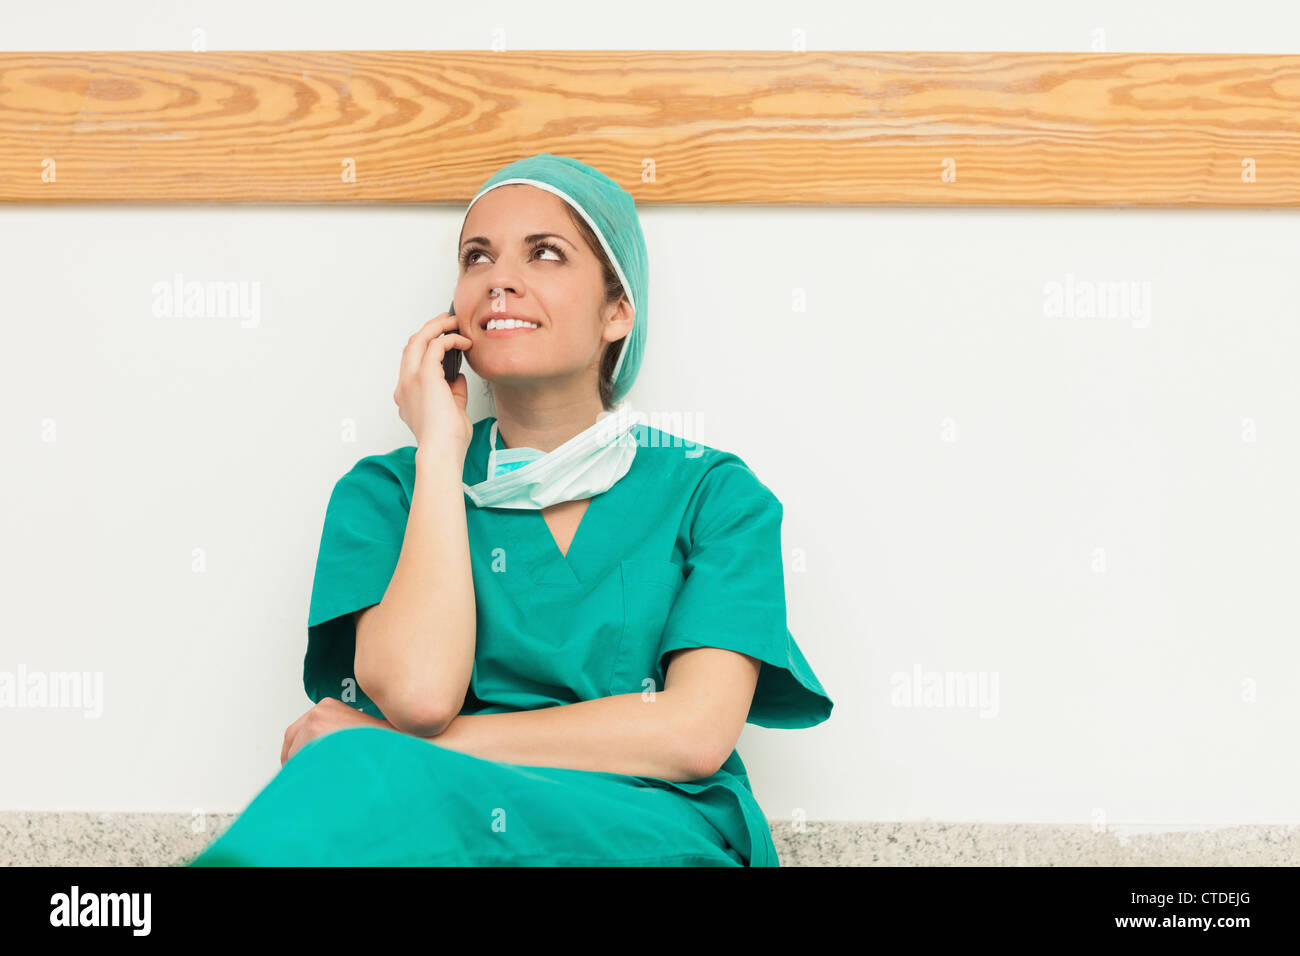 Chirurg, lächelnd, während Sie auf dem Boden sitzen und telefonieren Stockfoto